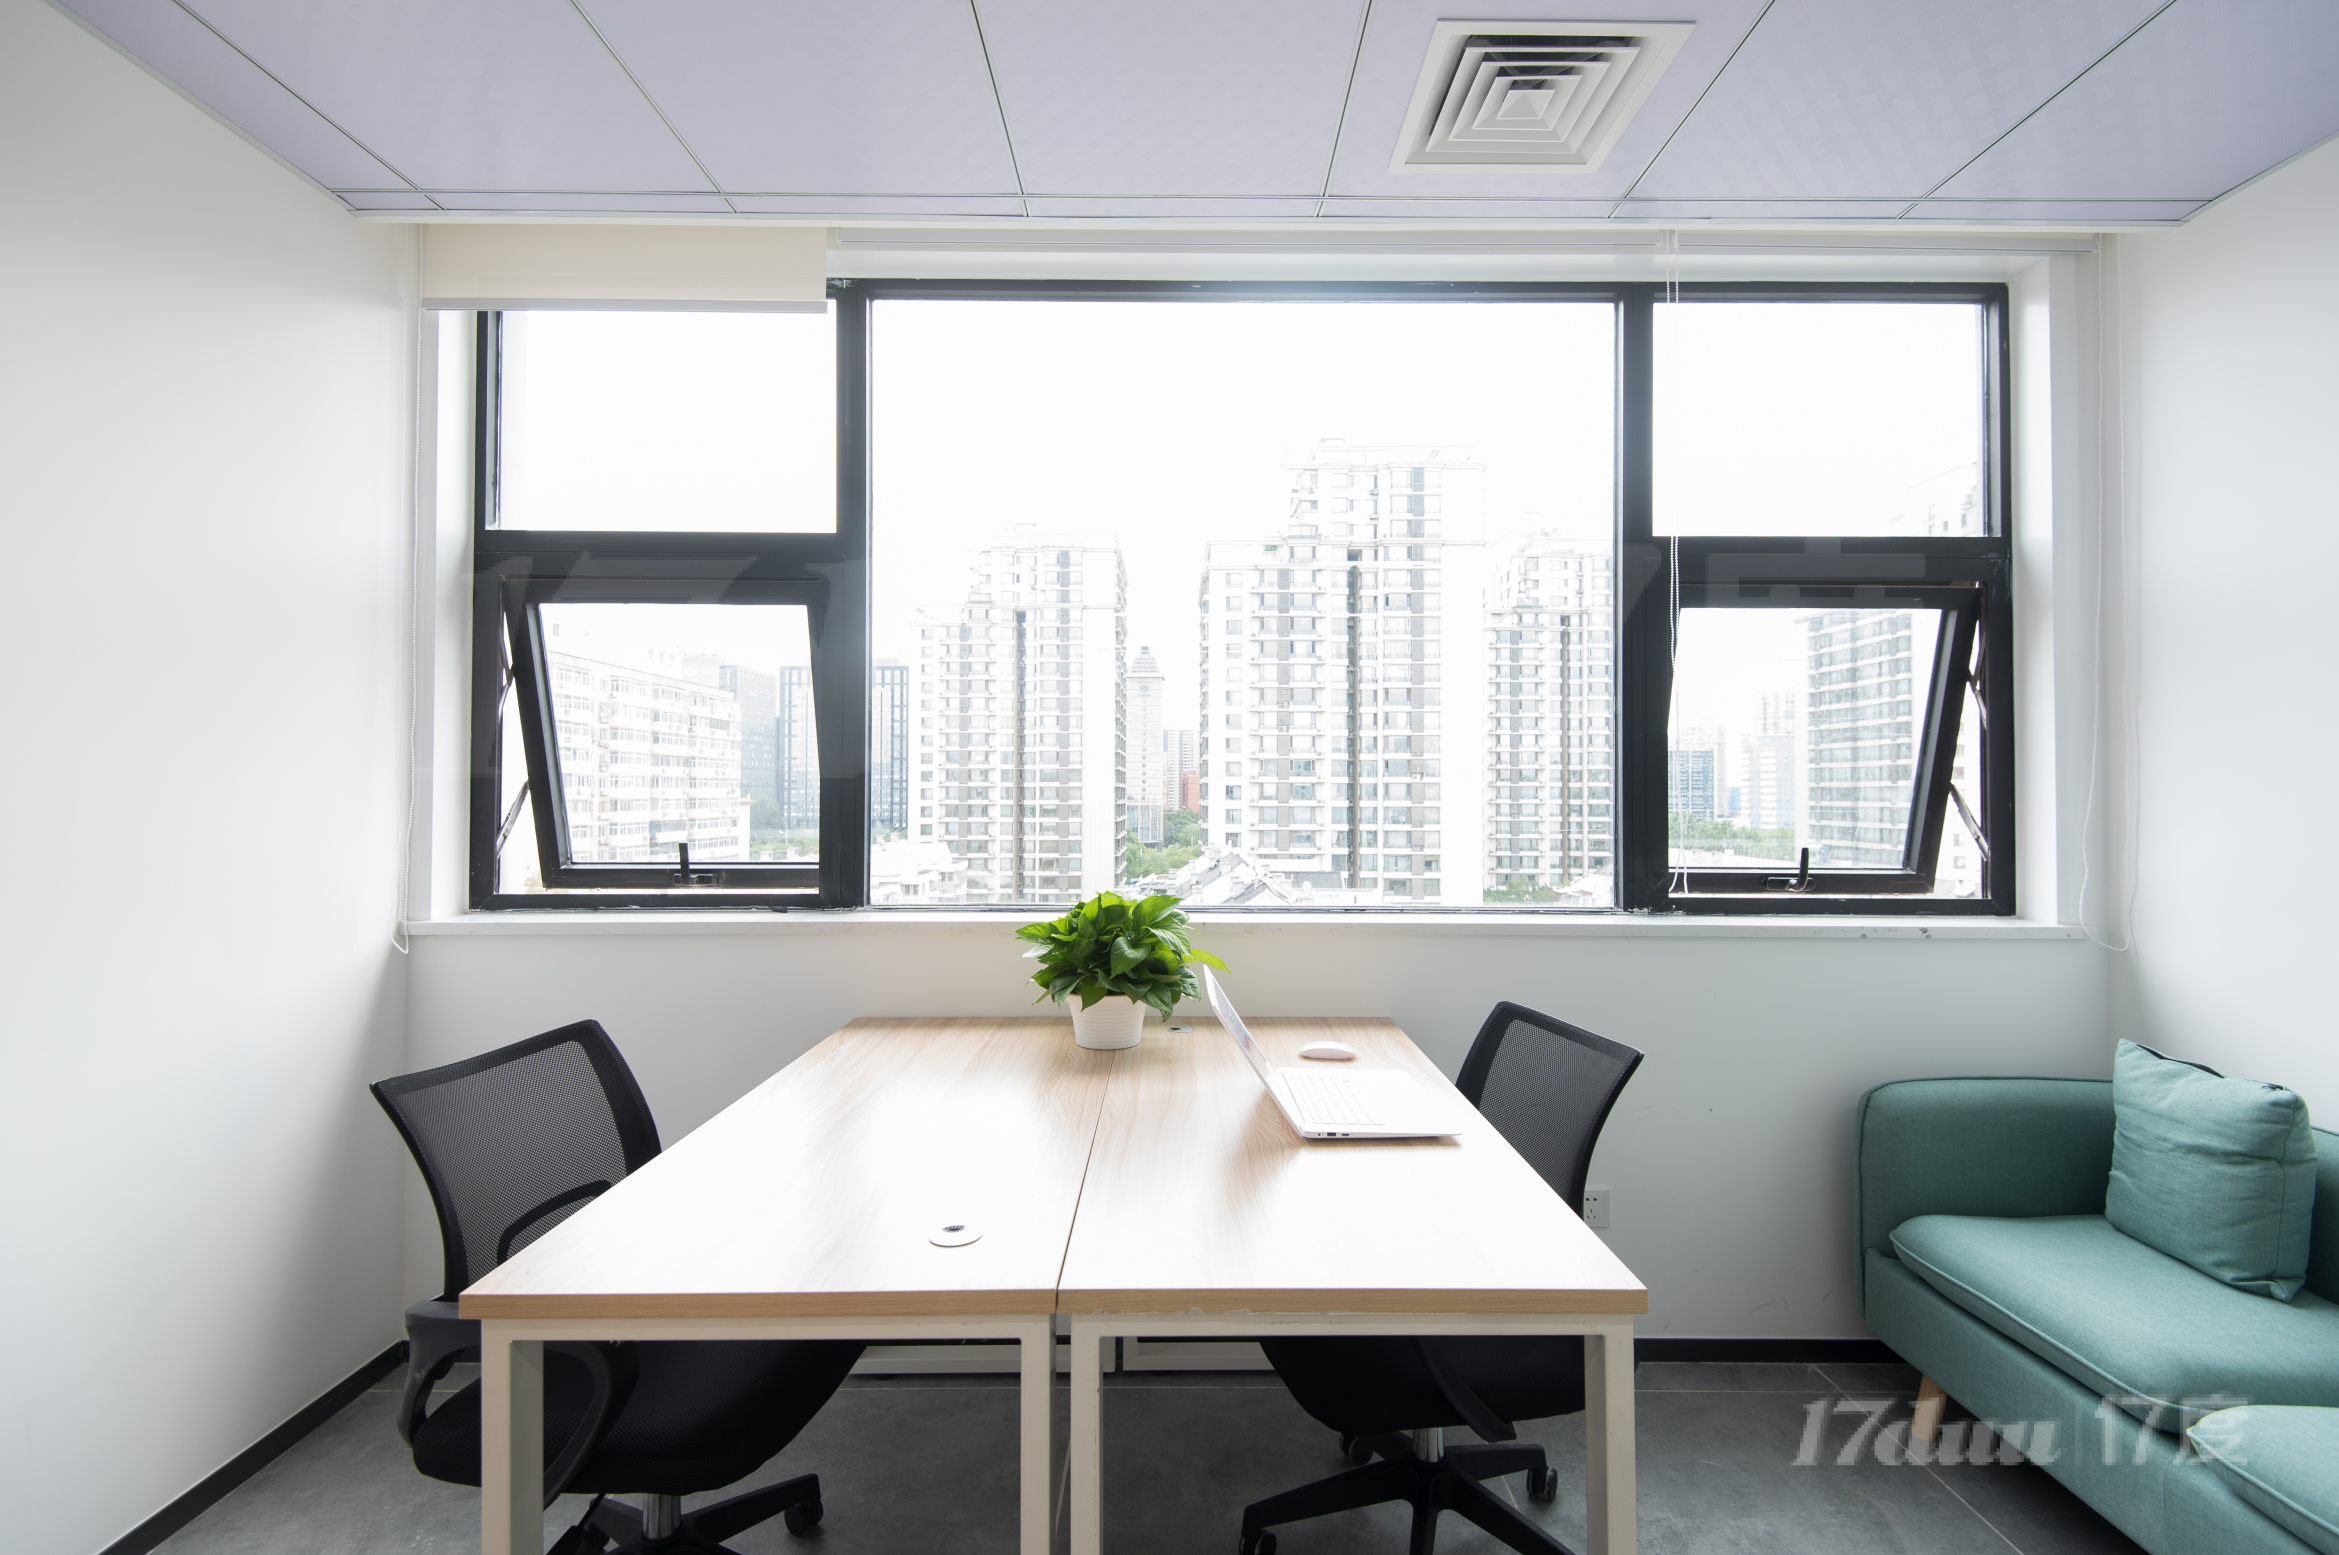 小型办公间出租 全套办公家具 优雅环境